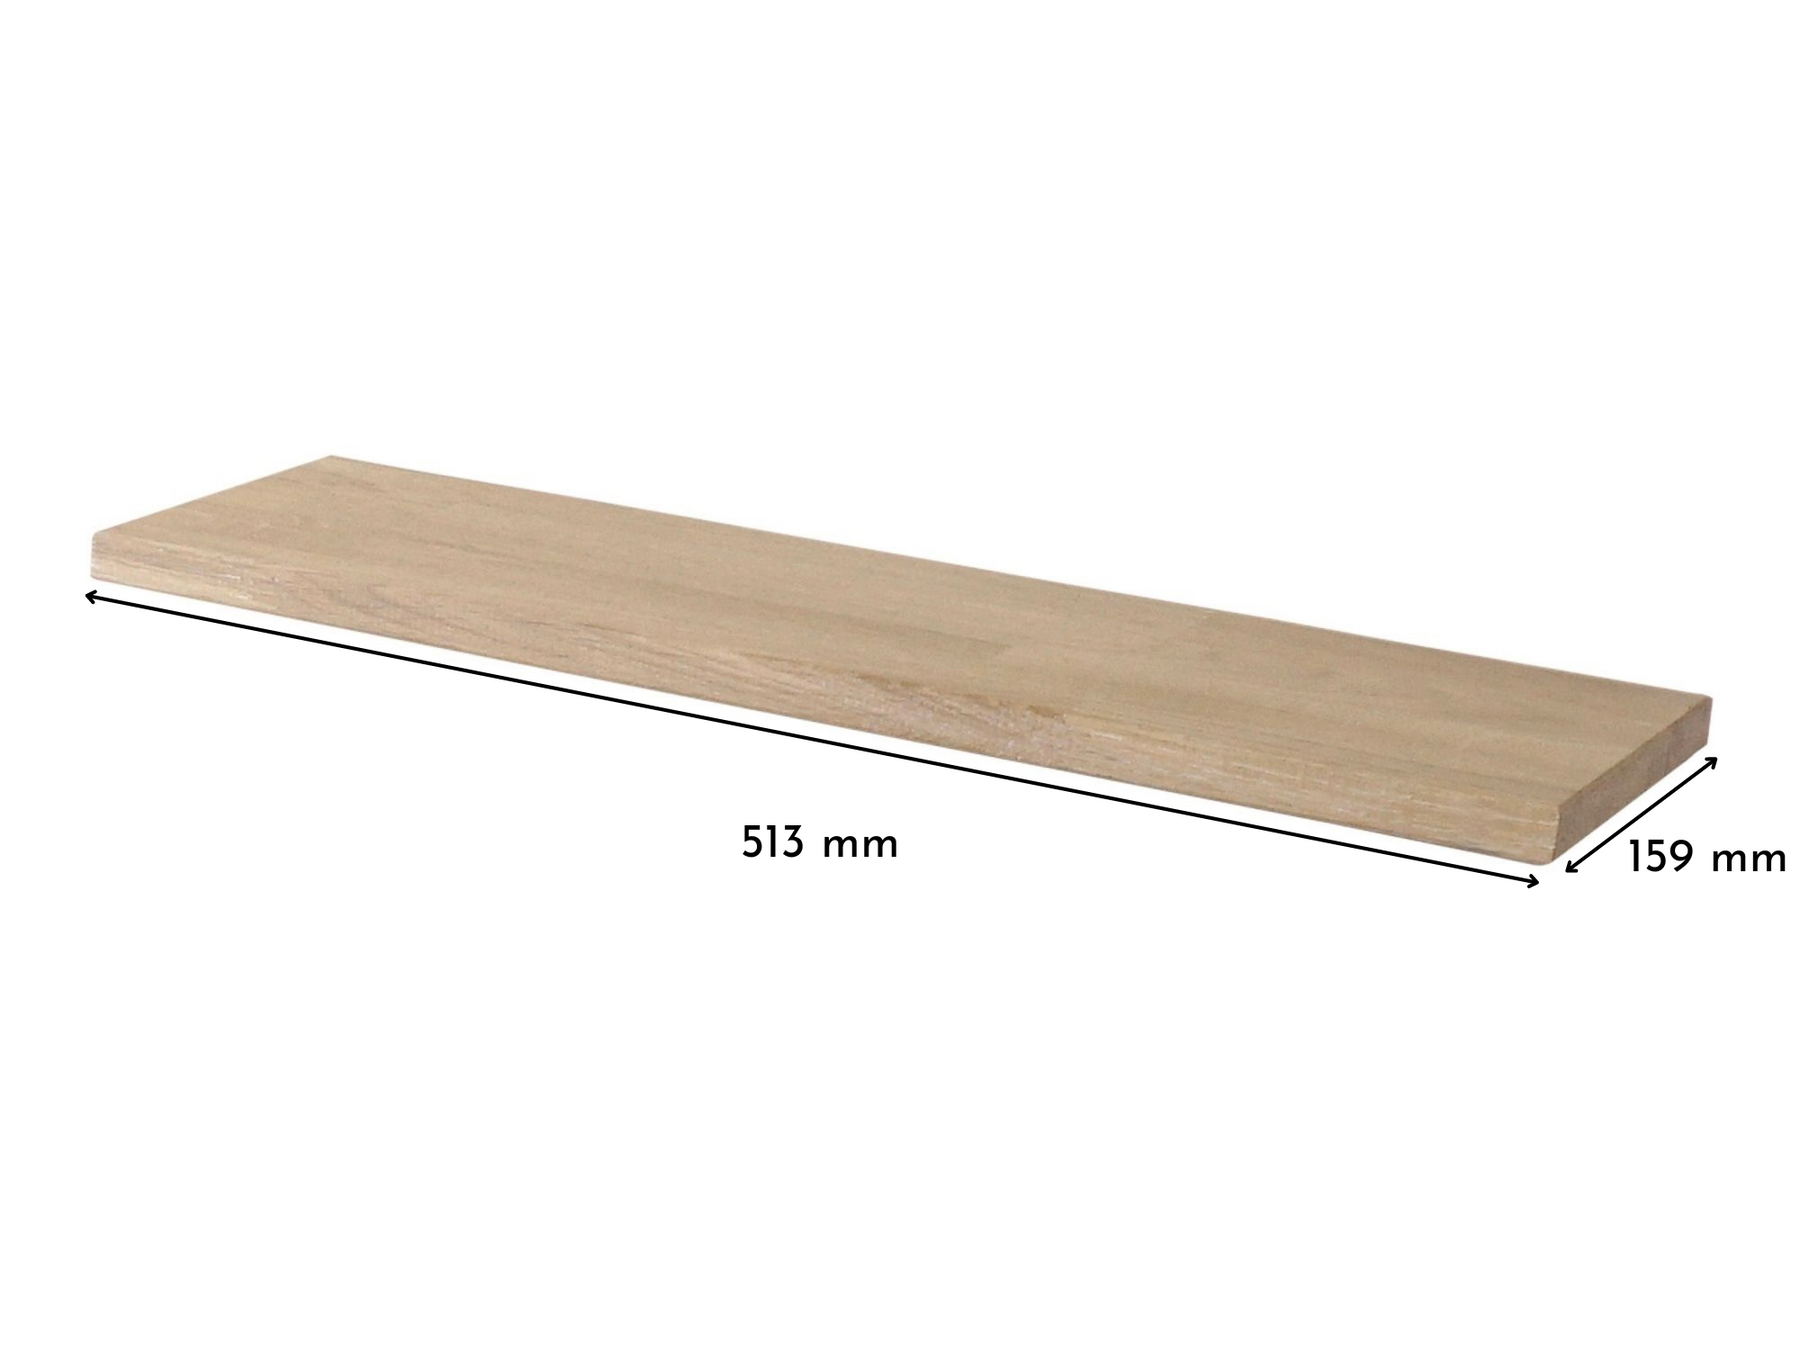 Deckplatte in Eiche Weiß für Ikea Trones Schuhschrank 1 Fach breit